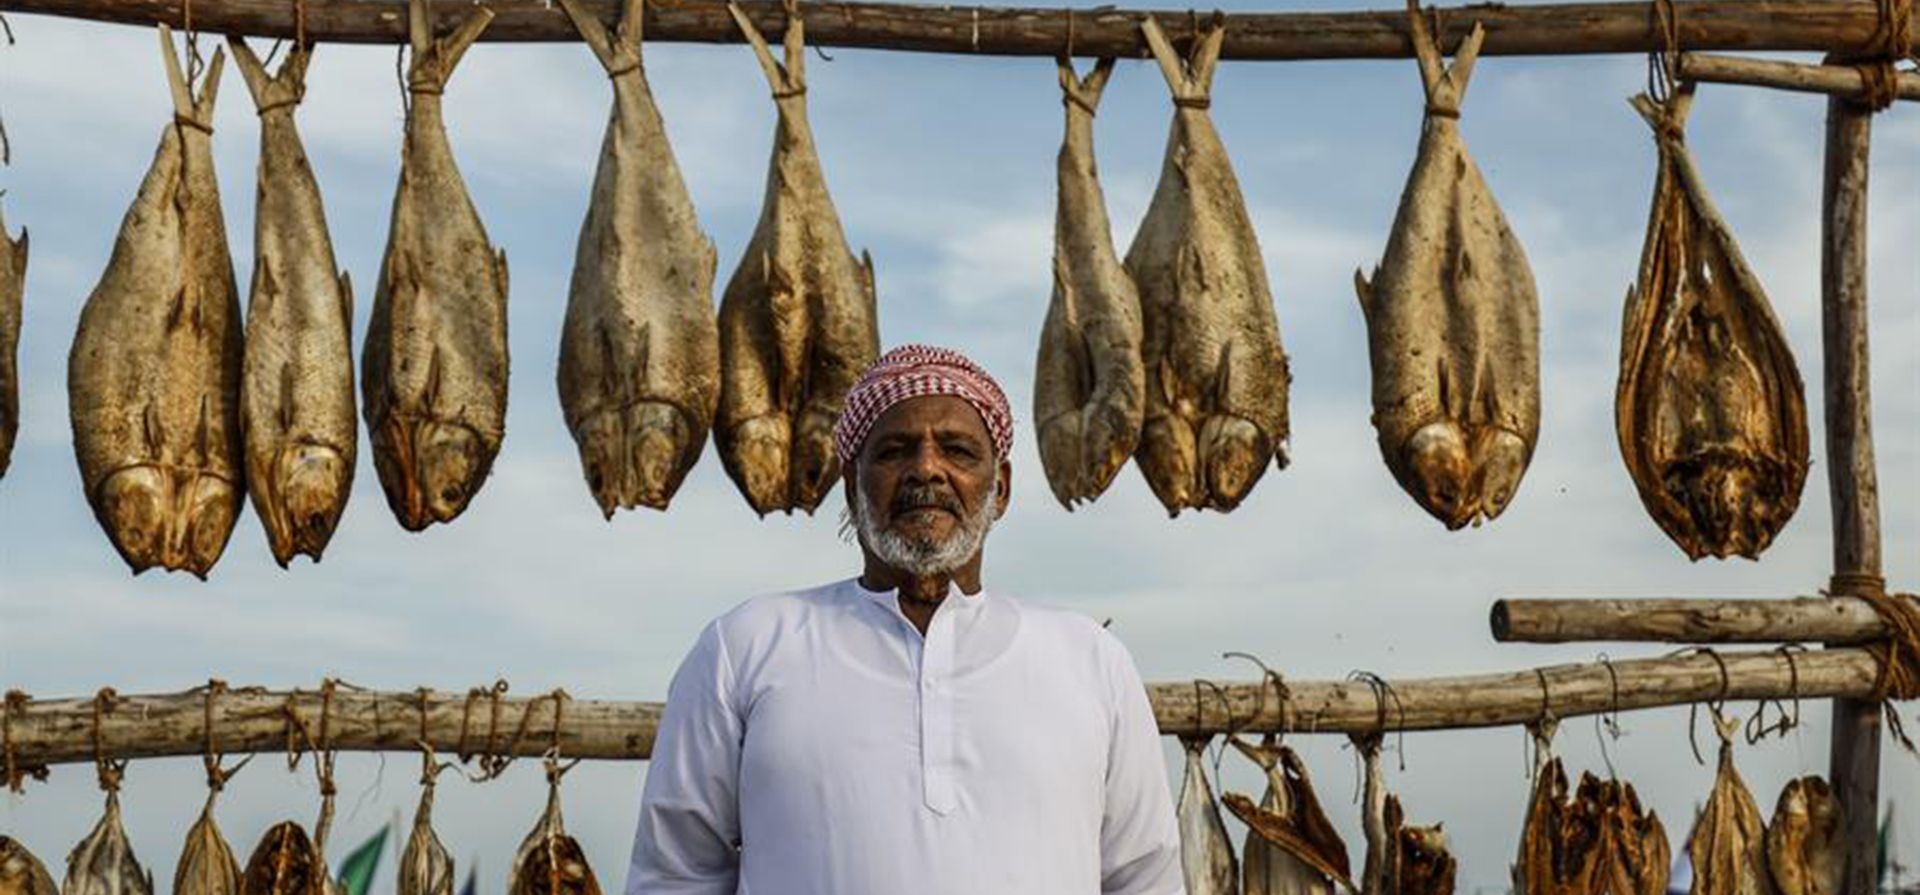 Un hombre posa junto a un puesto de venta de pescado en Katara Doha, Qatar, durante la celebración del Mundial de fútbol. EFE/Juan Ignacio Roncoroni